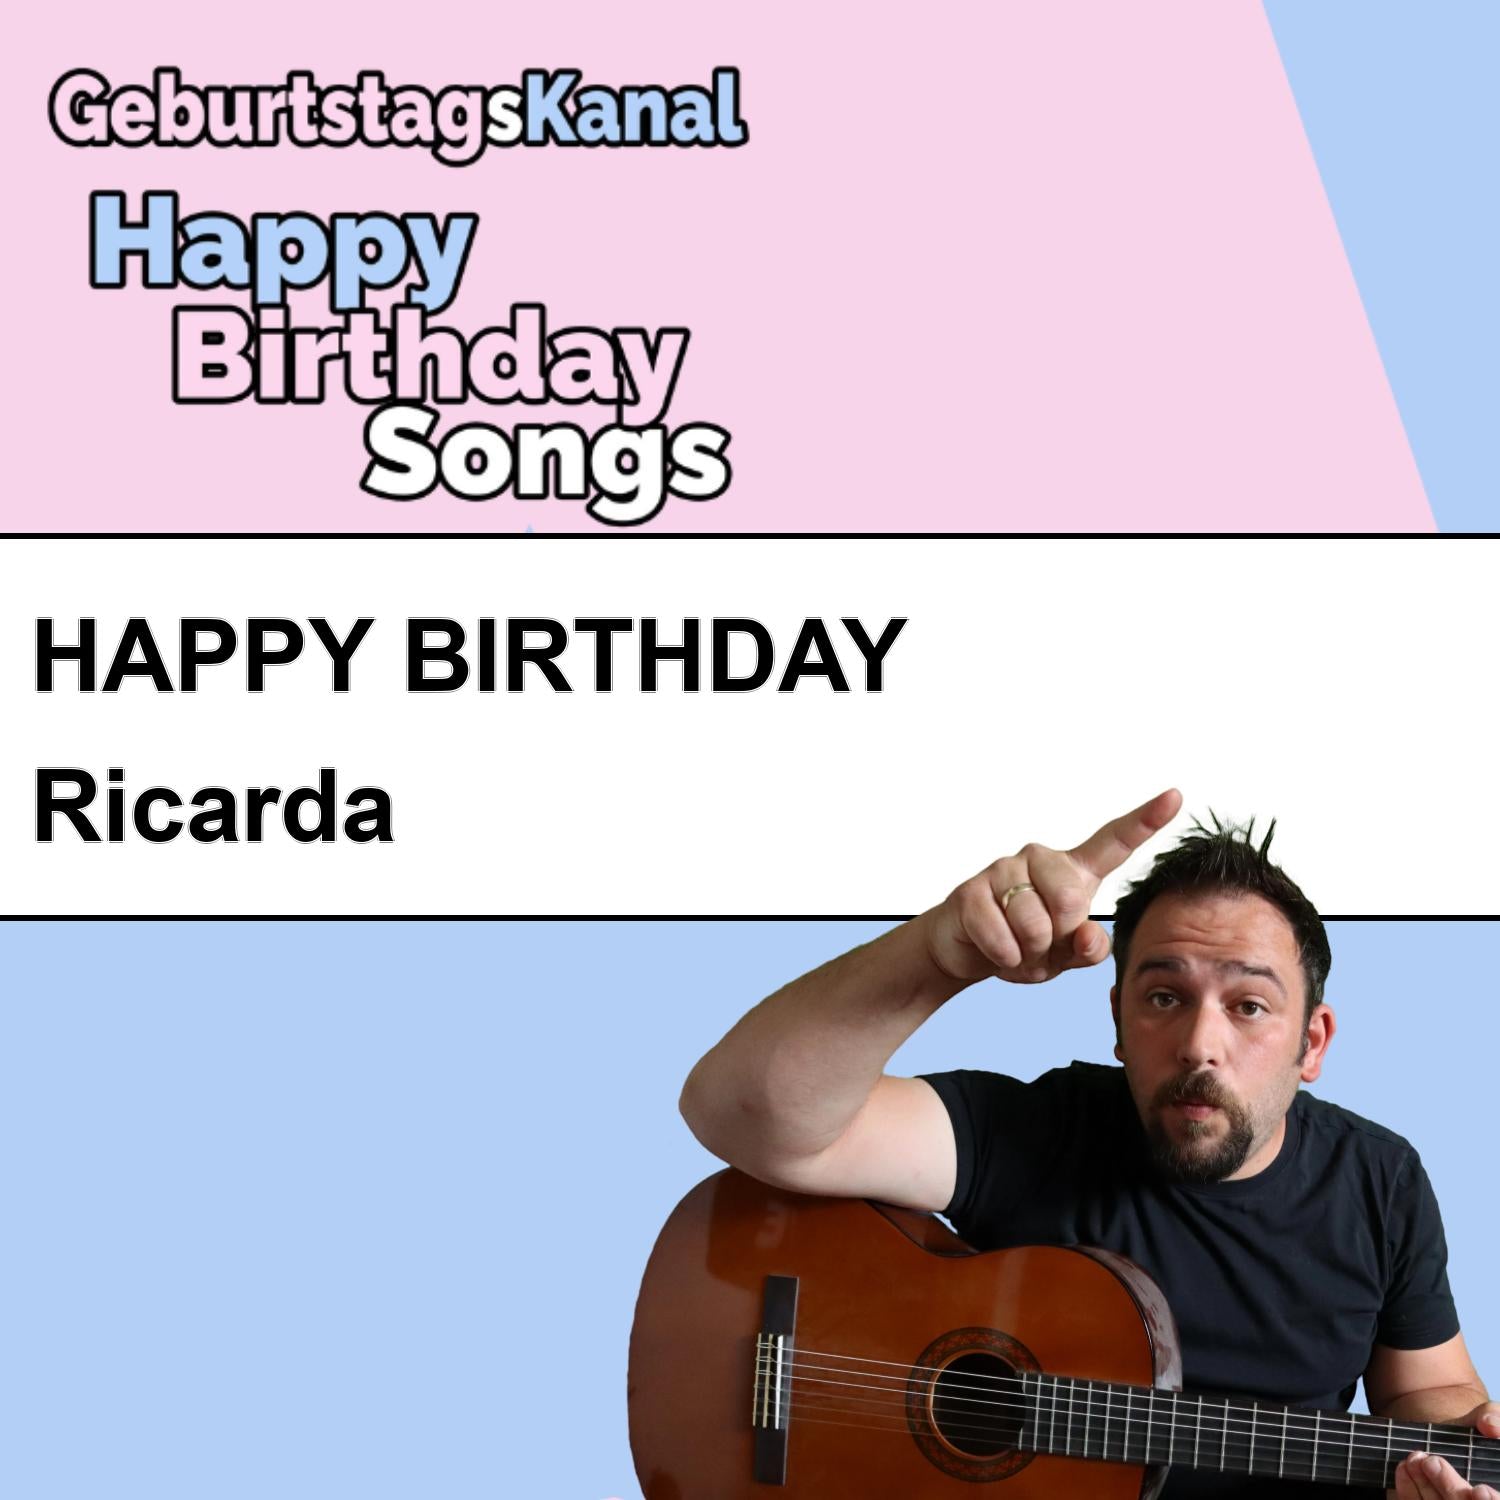 Produktbild Happy Birthday to you Ricarda mit Wunschgrußbotschaft